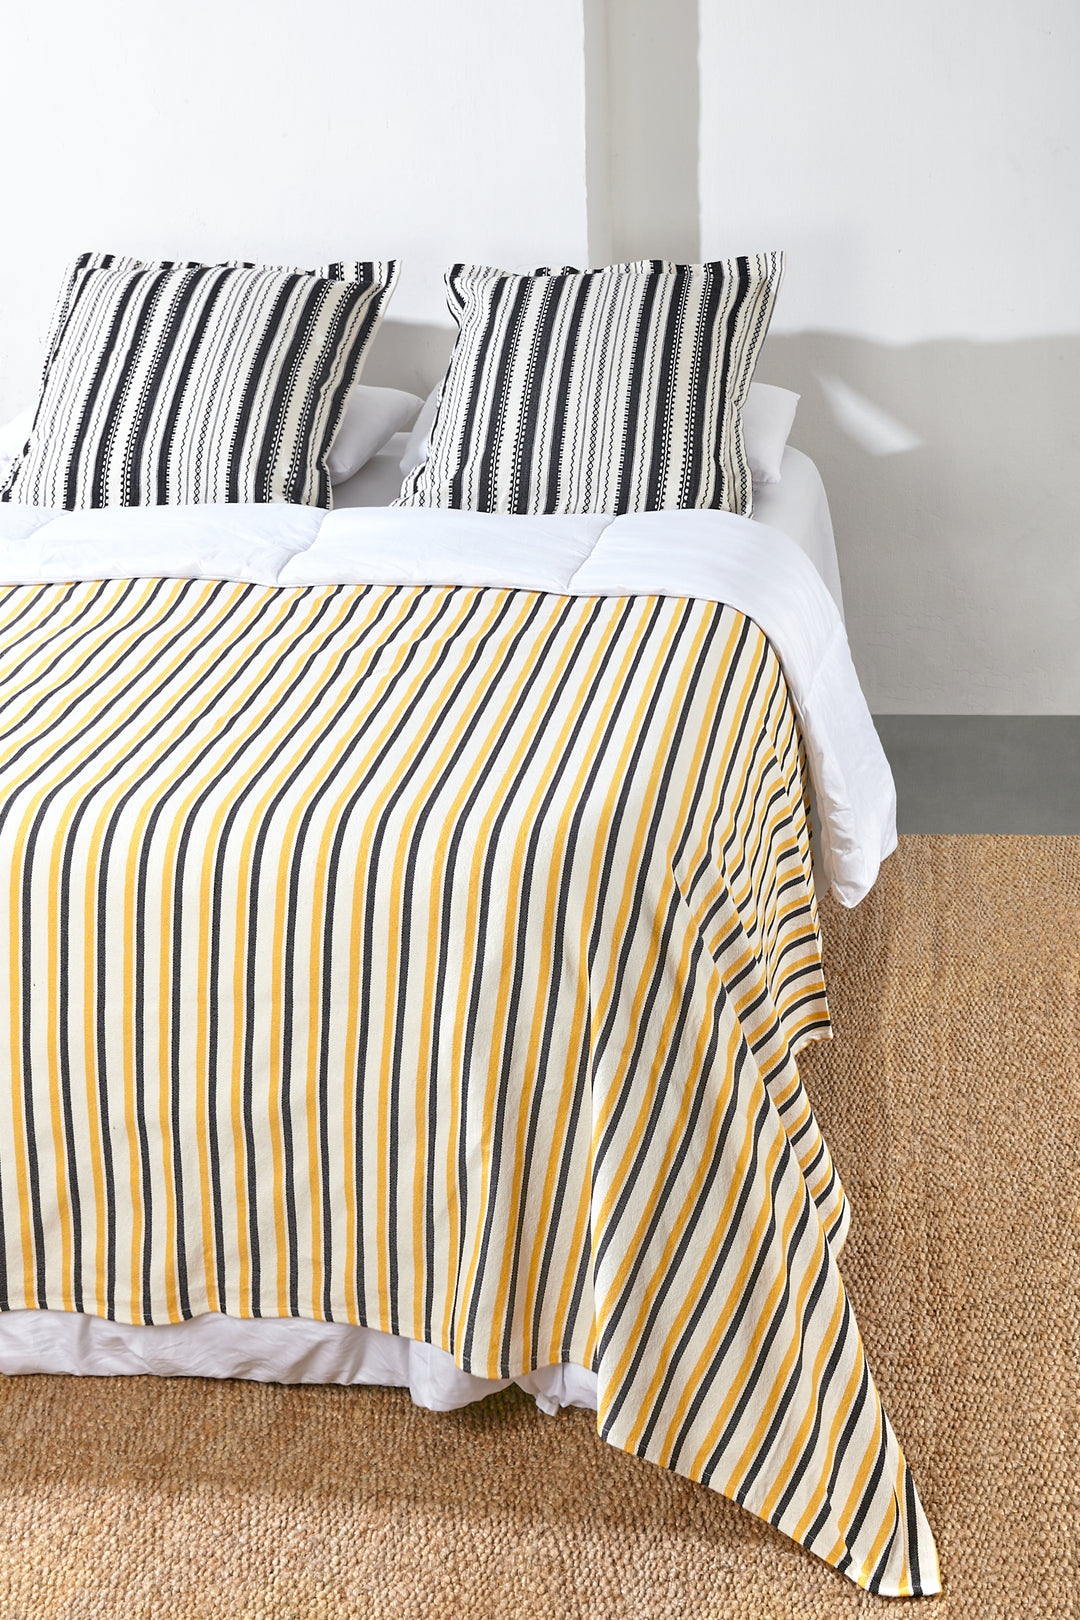 Colcha cubre cama y sofá tejido canario amarillo y negro